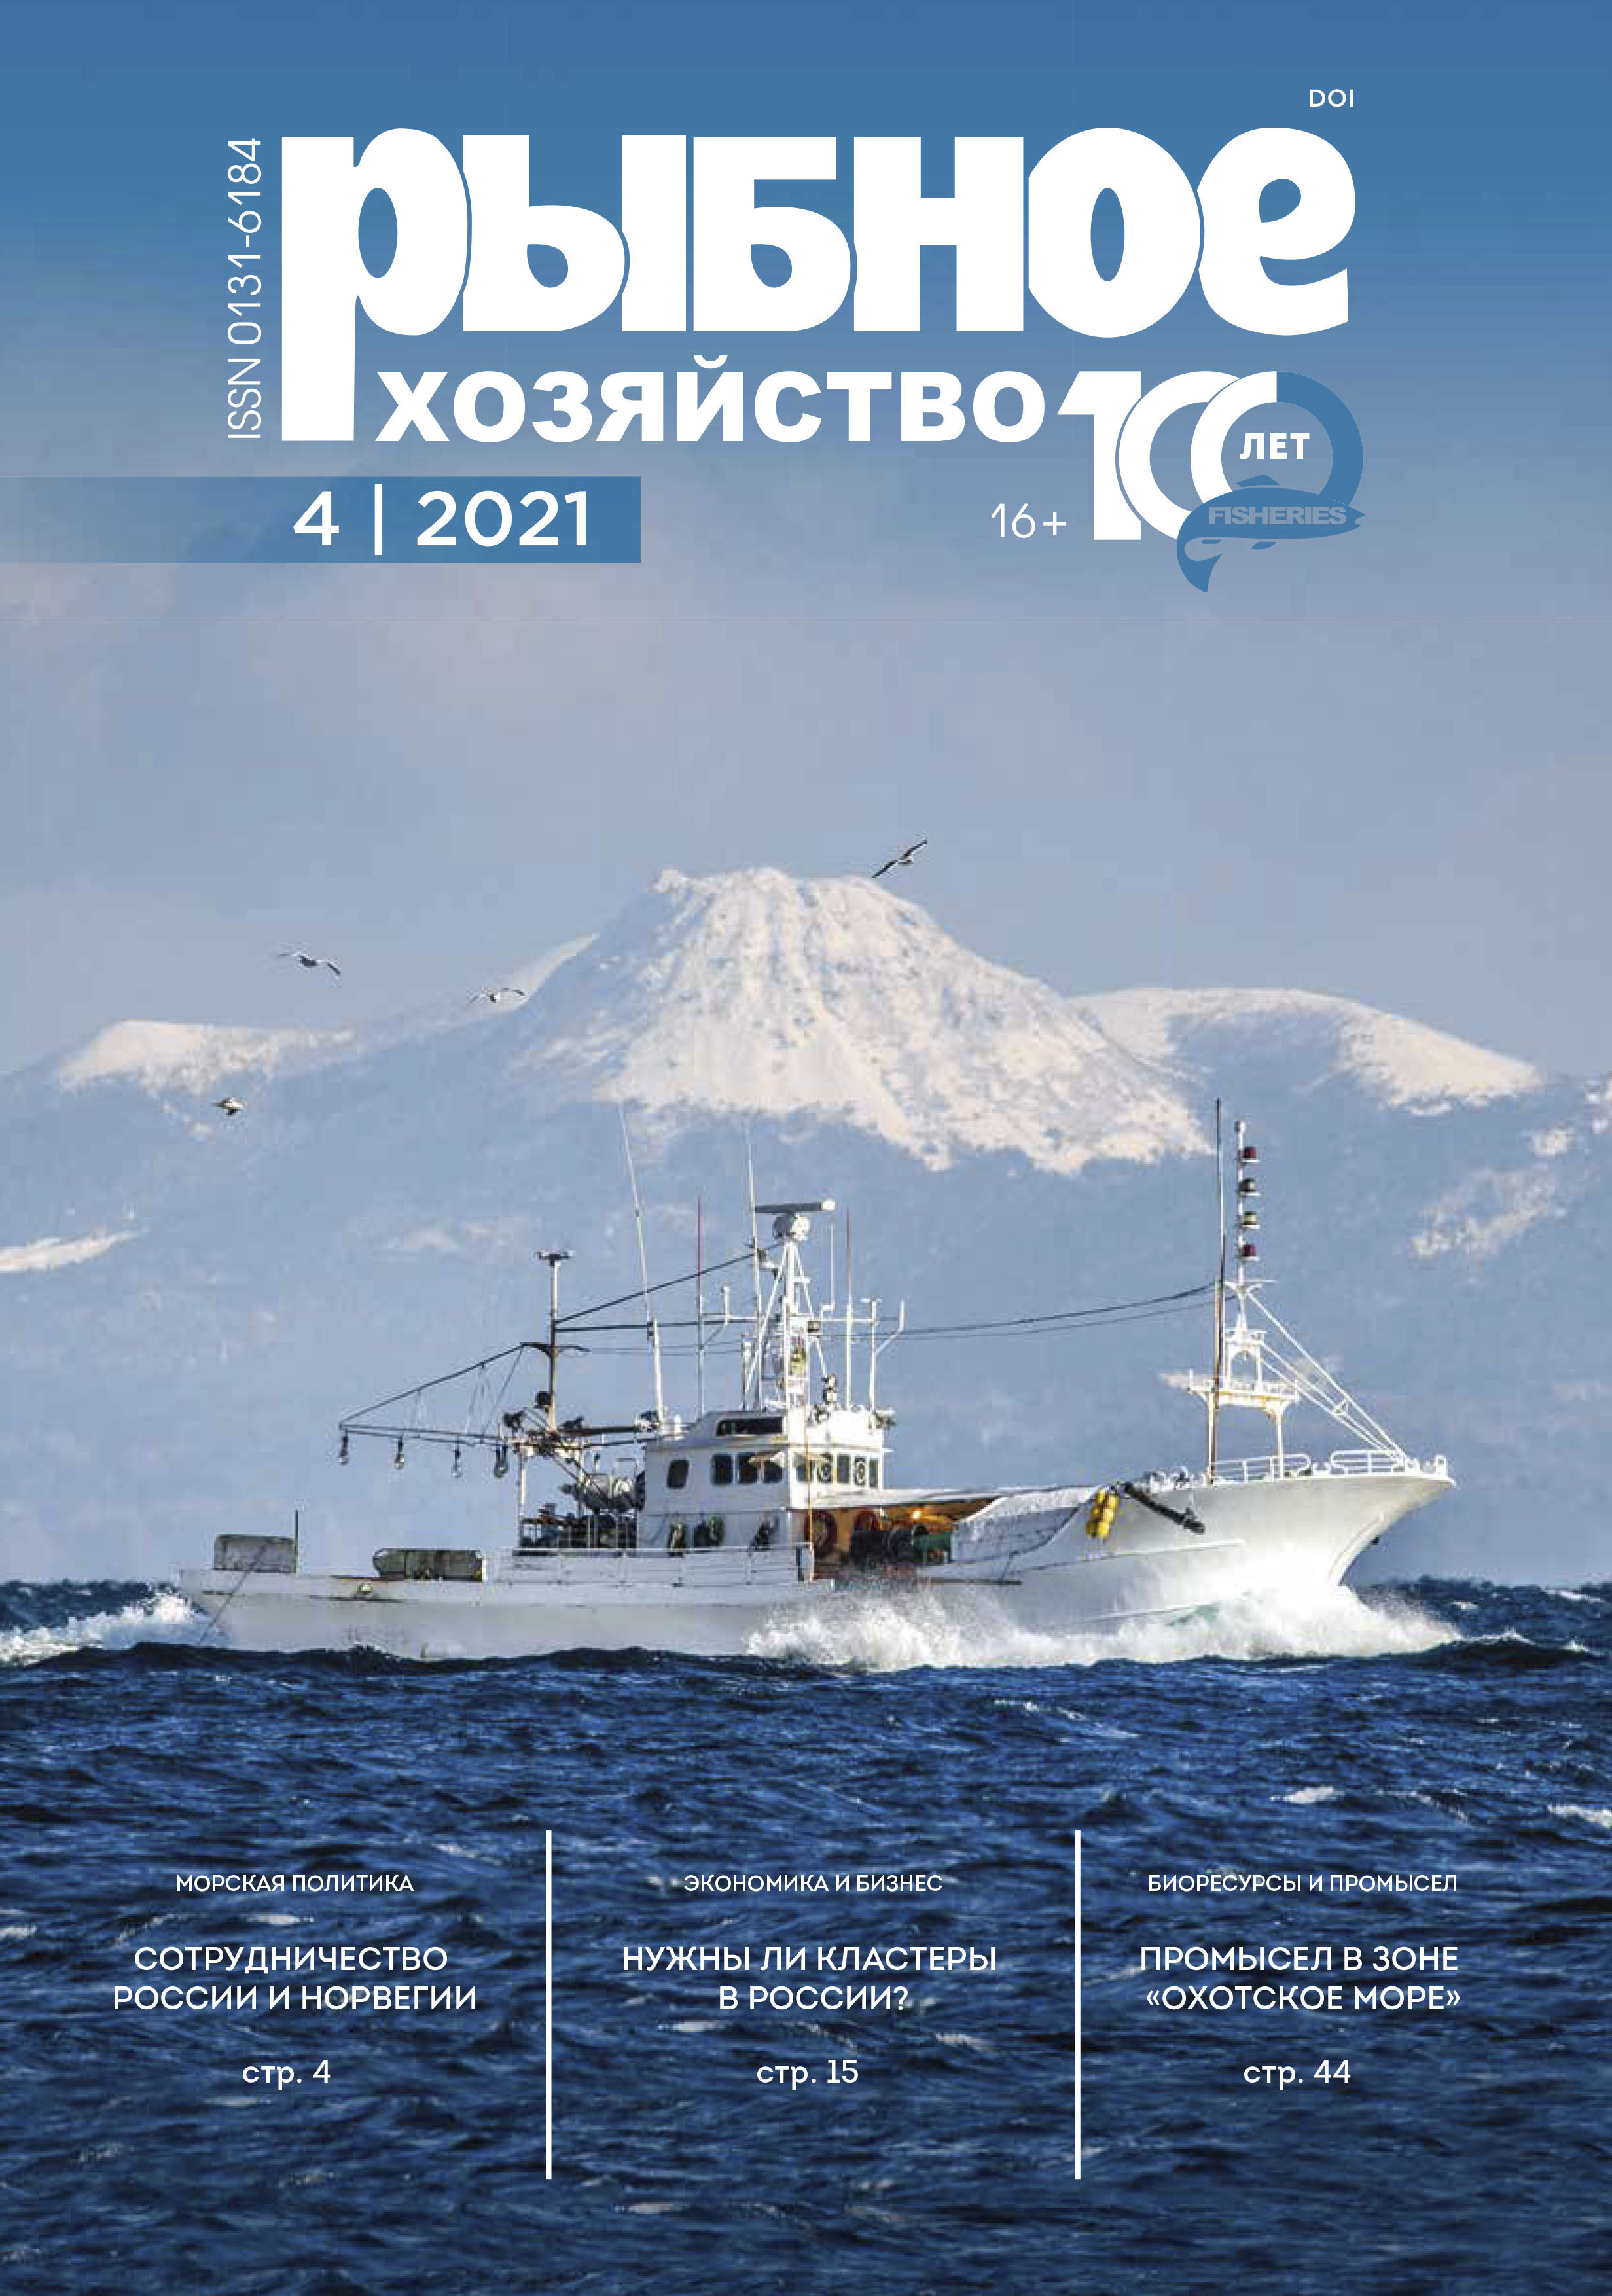             Содержание ртути и свинца в кормовой базе ценных видов рыб Каспийского моря
    